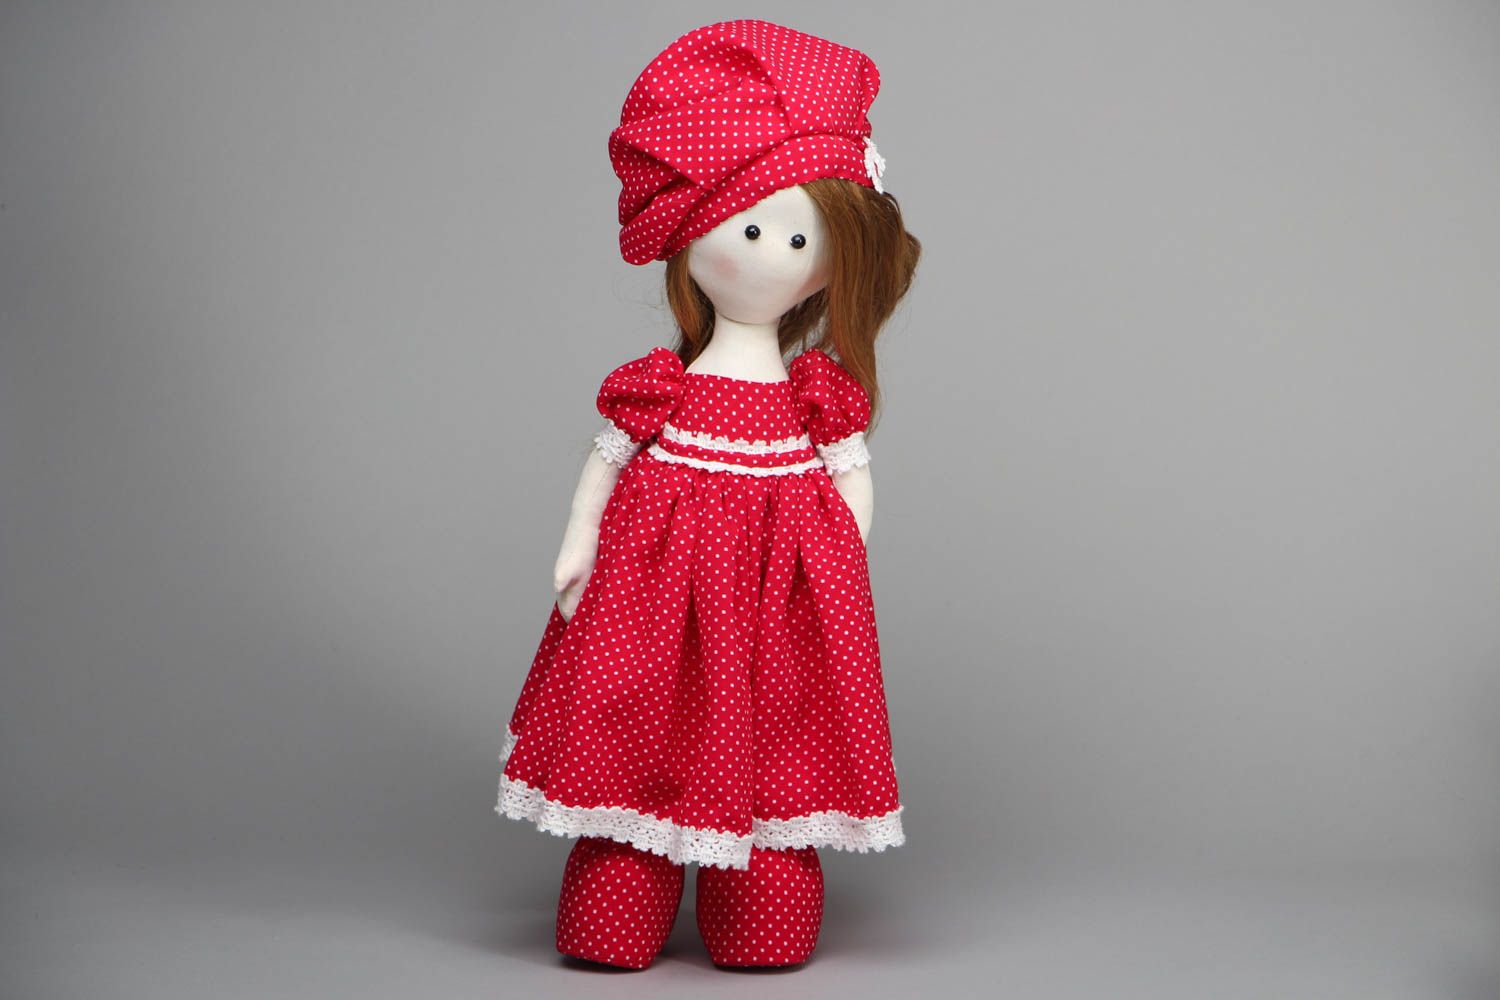 Handmade designer doll in polka-dot dress photo 1